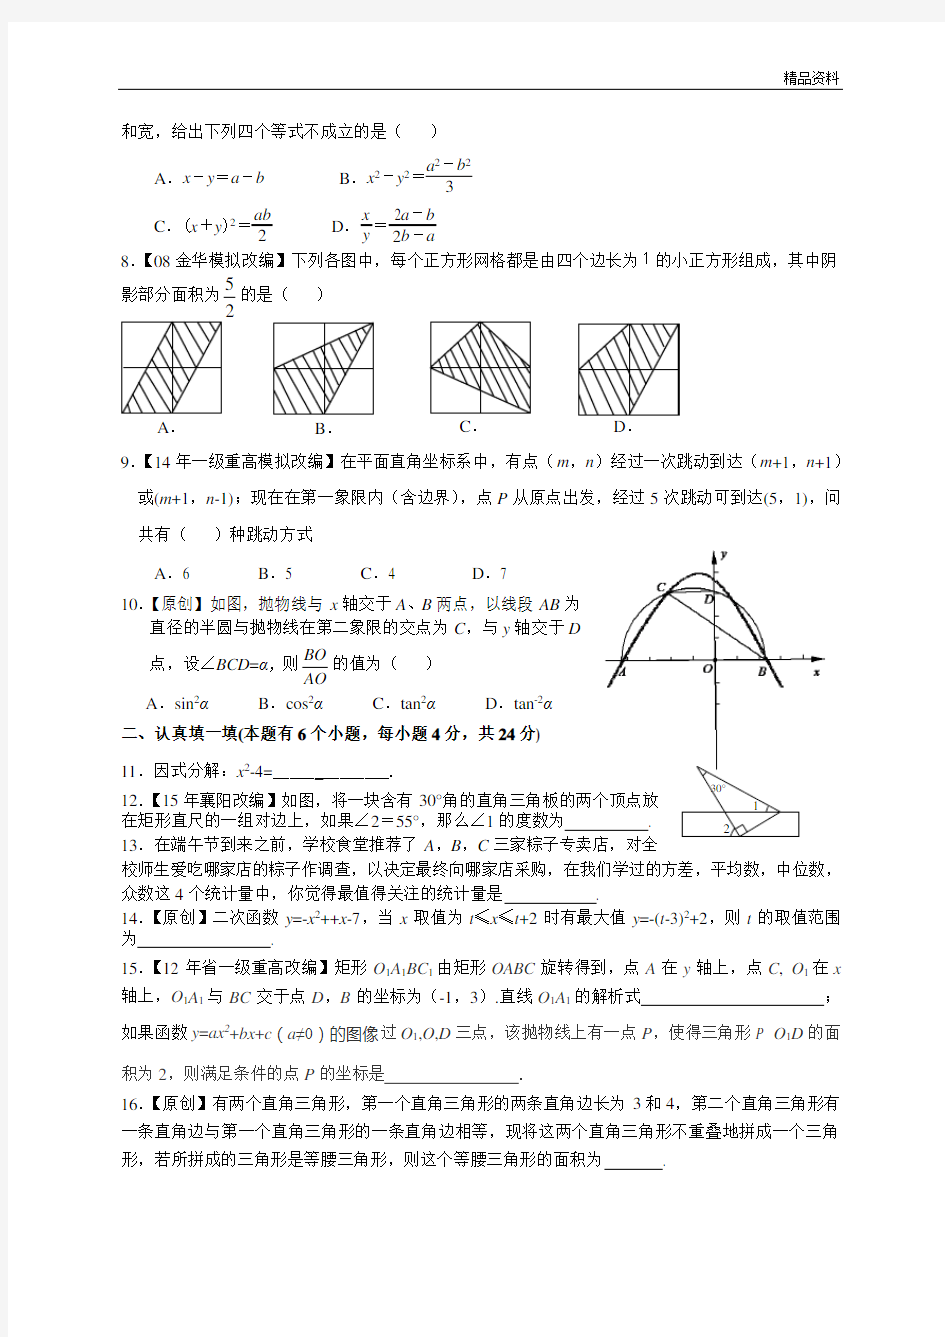 浙江省杭州市数学中考模拟试卷 (5)及答案